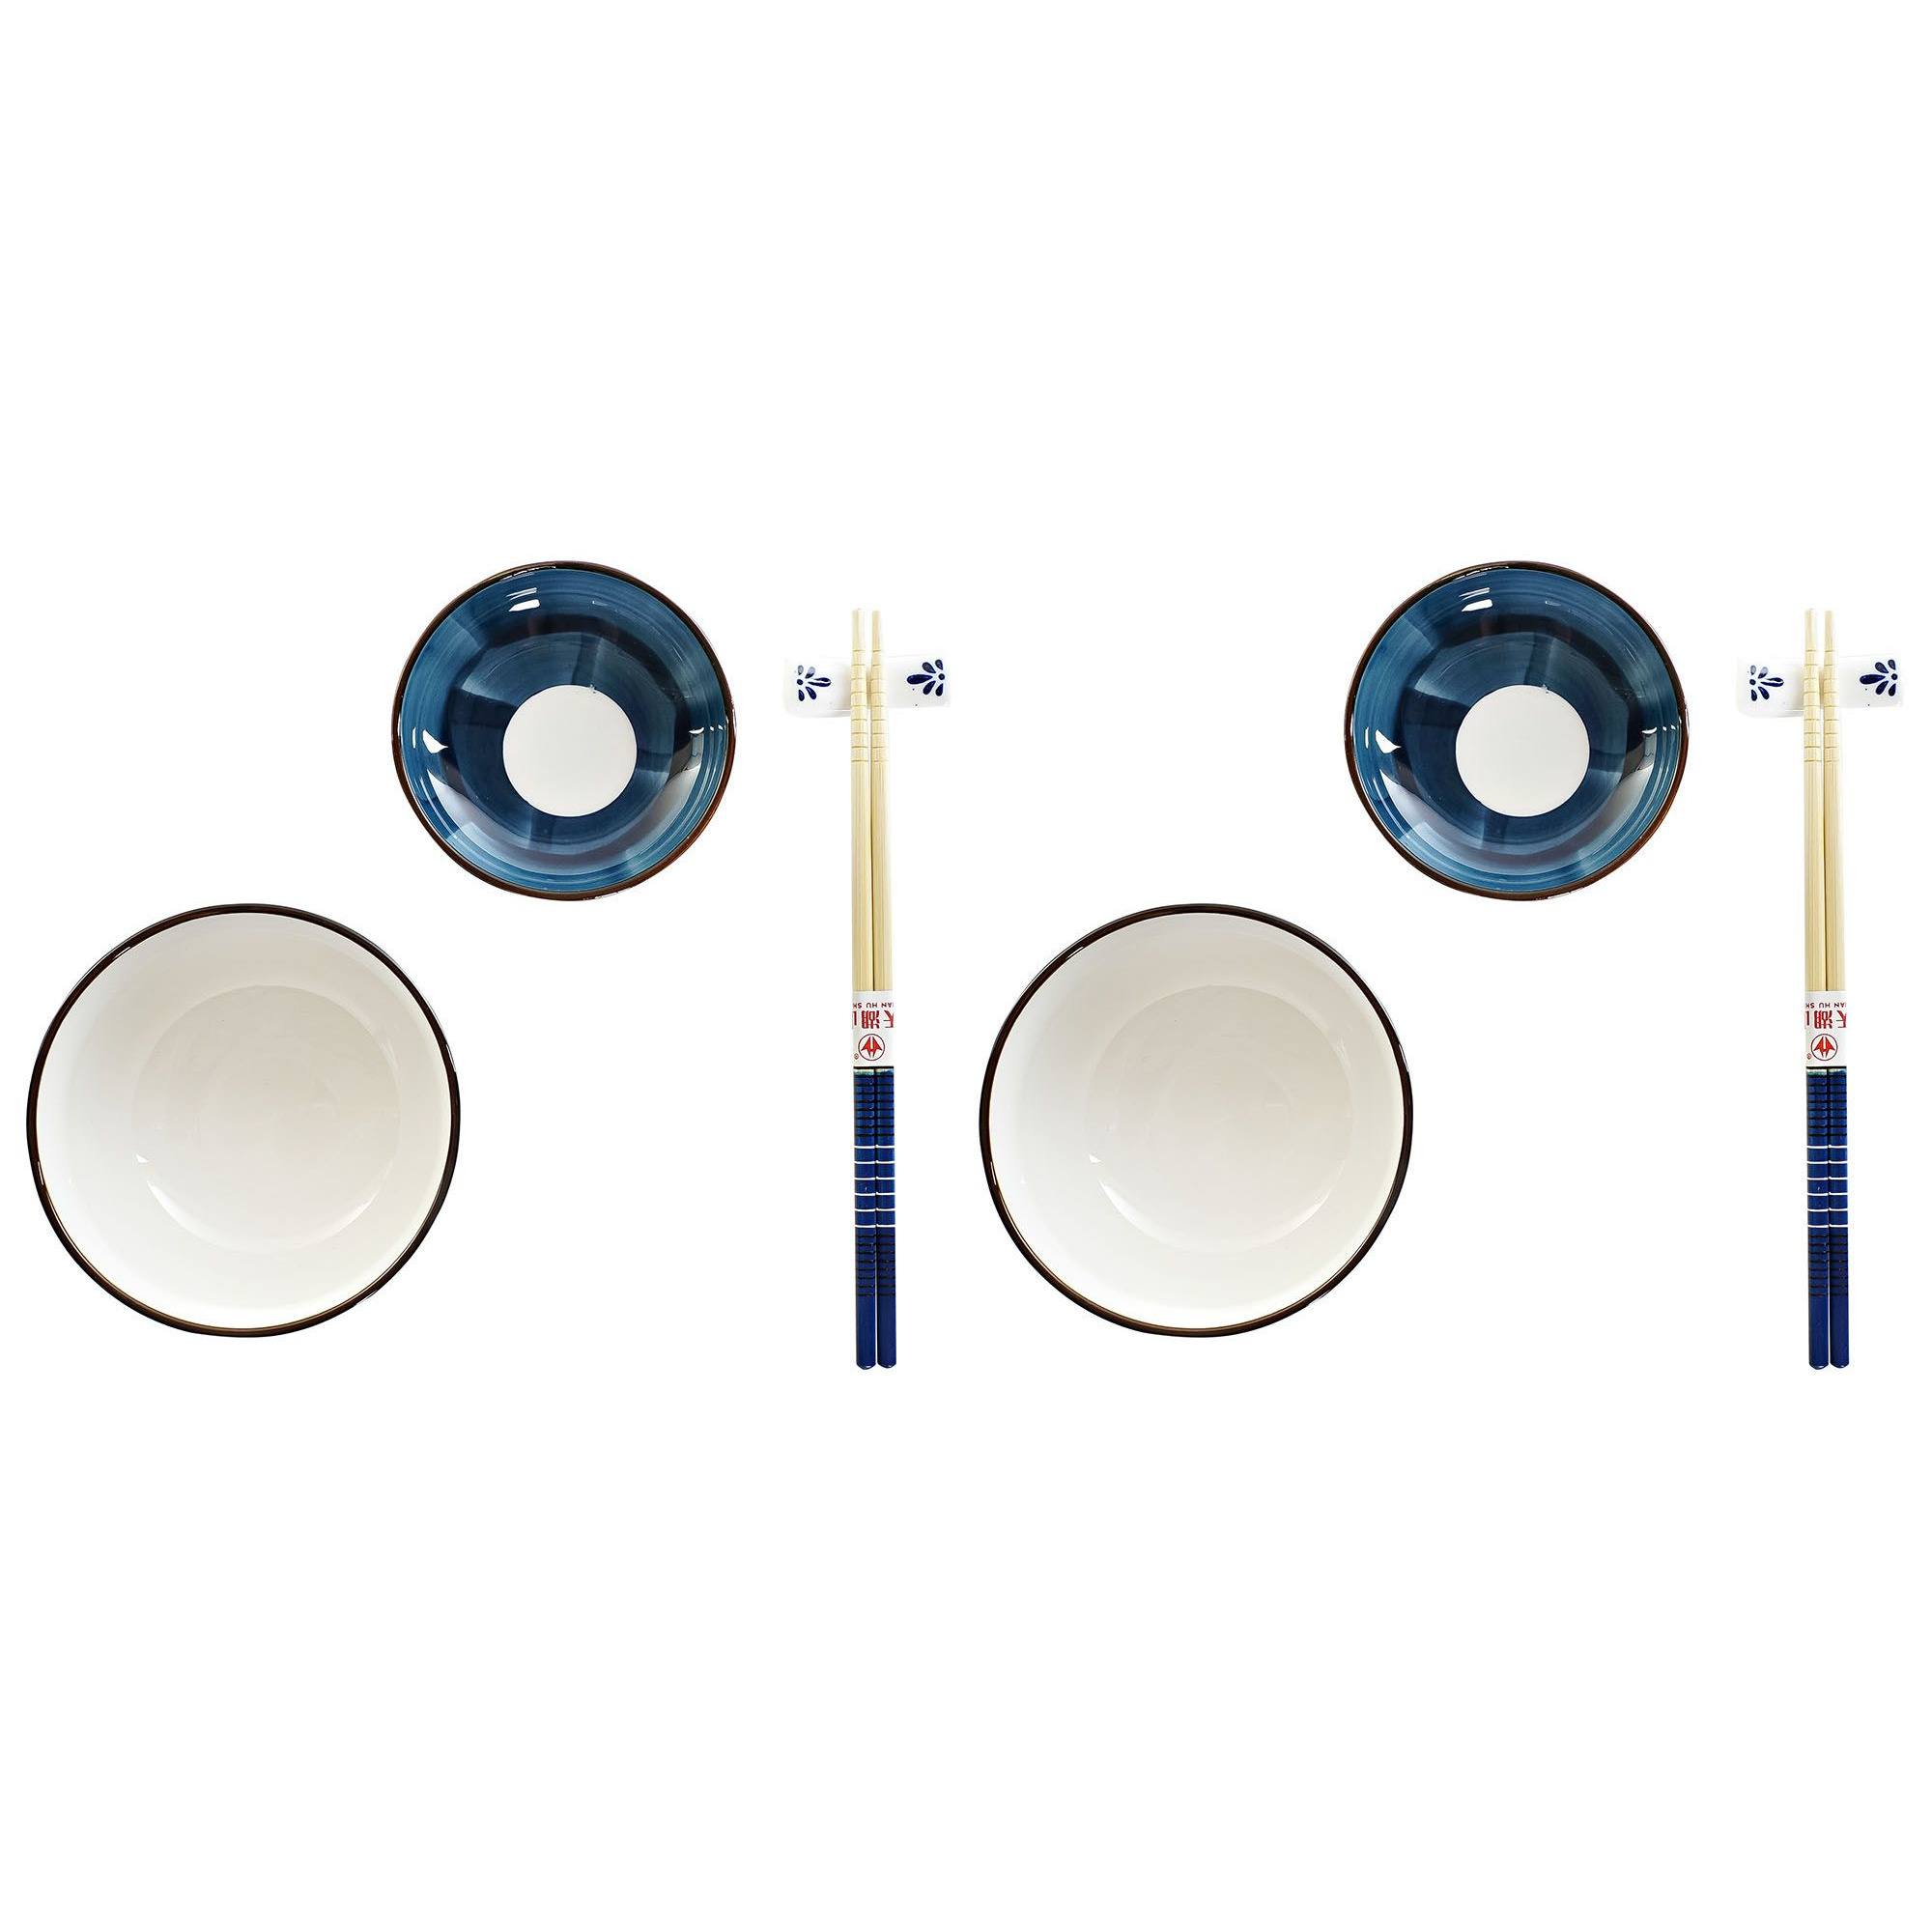 Items 8-delige sushi serveer set porselein voor 2 personen wit/blauw -